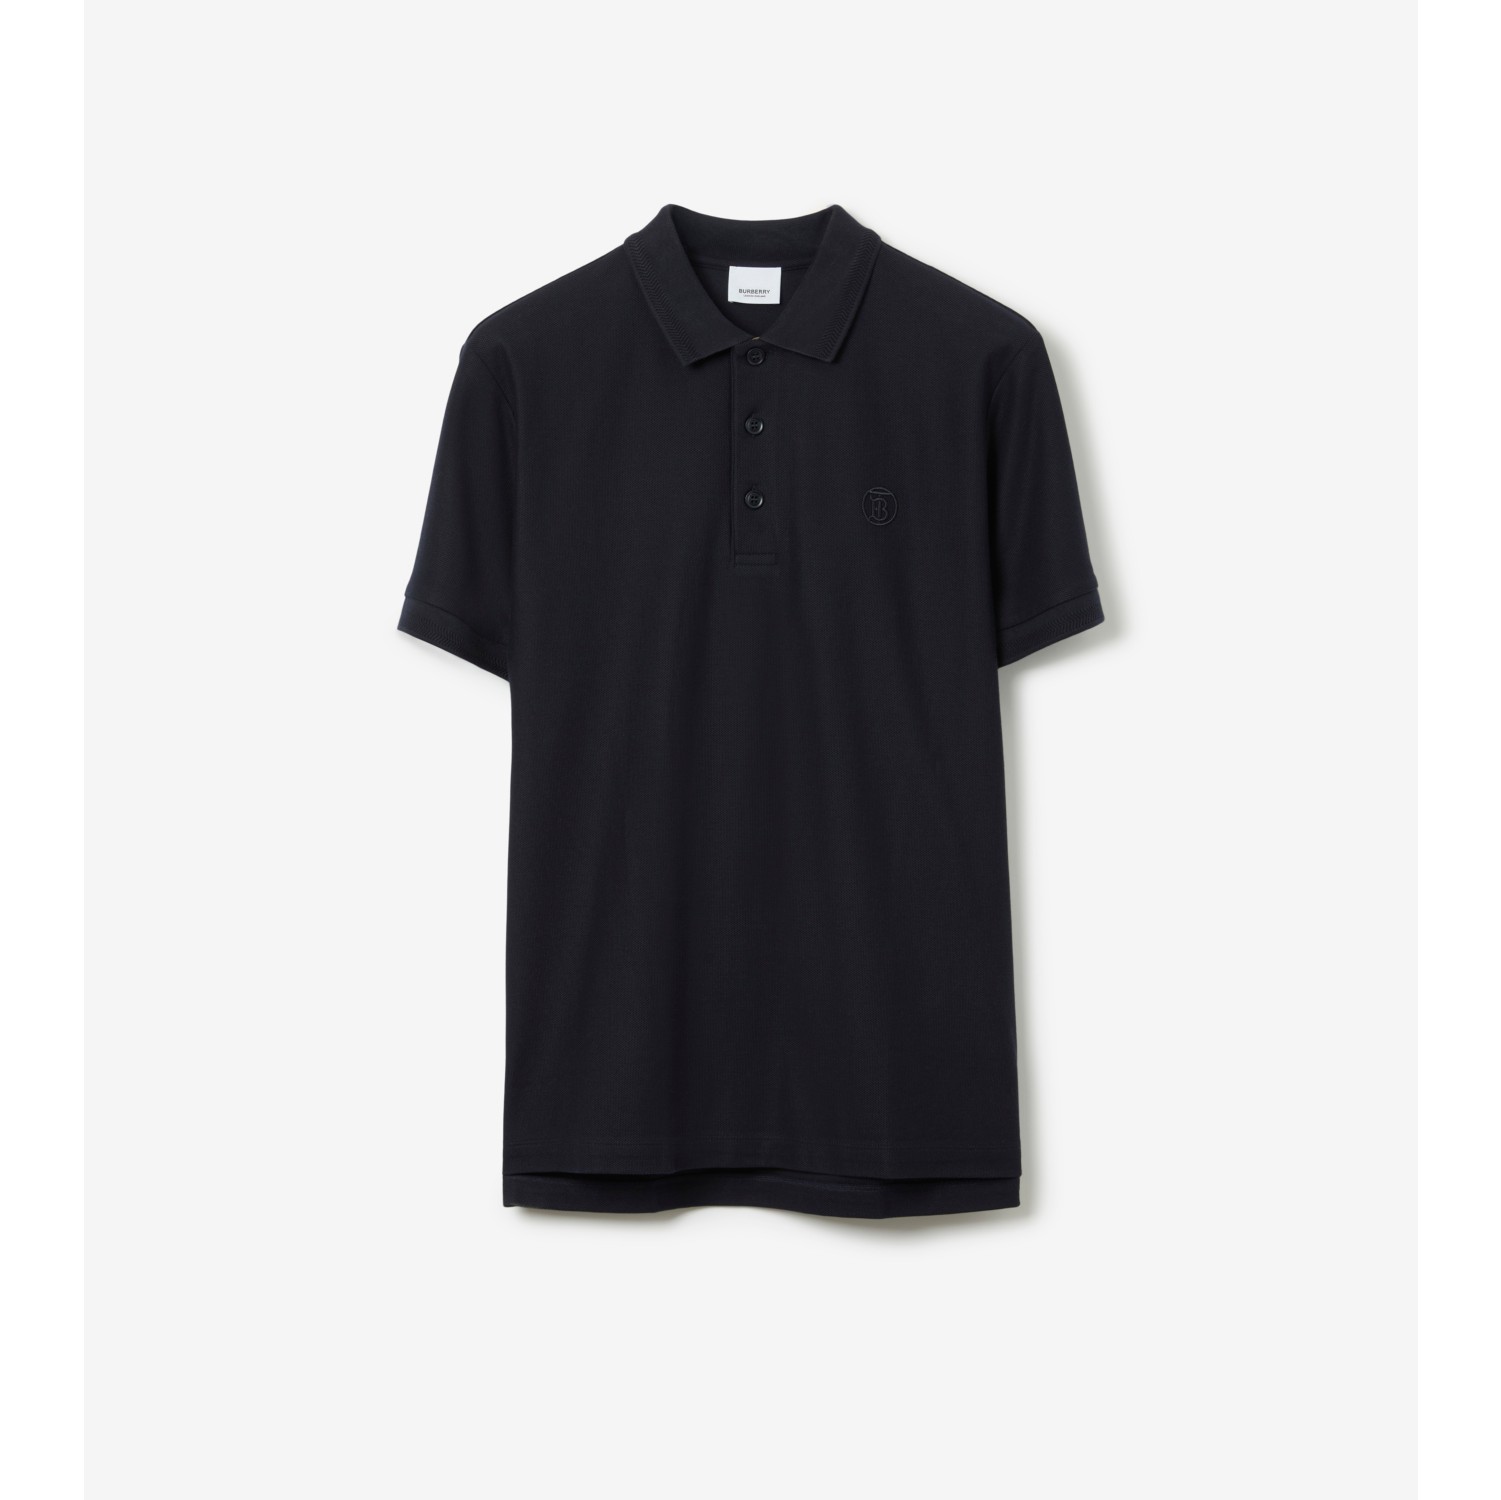 polo shirt price